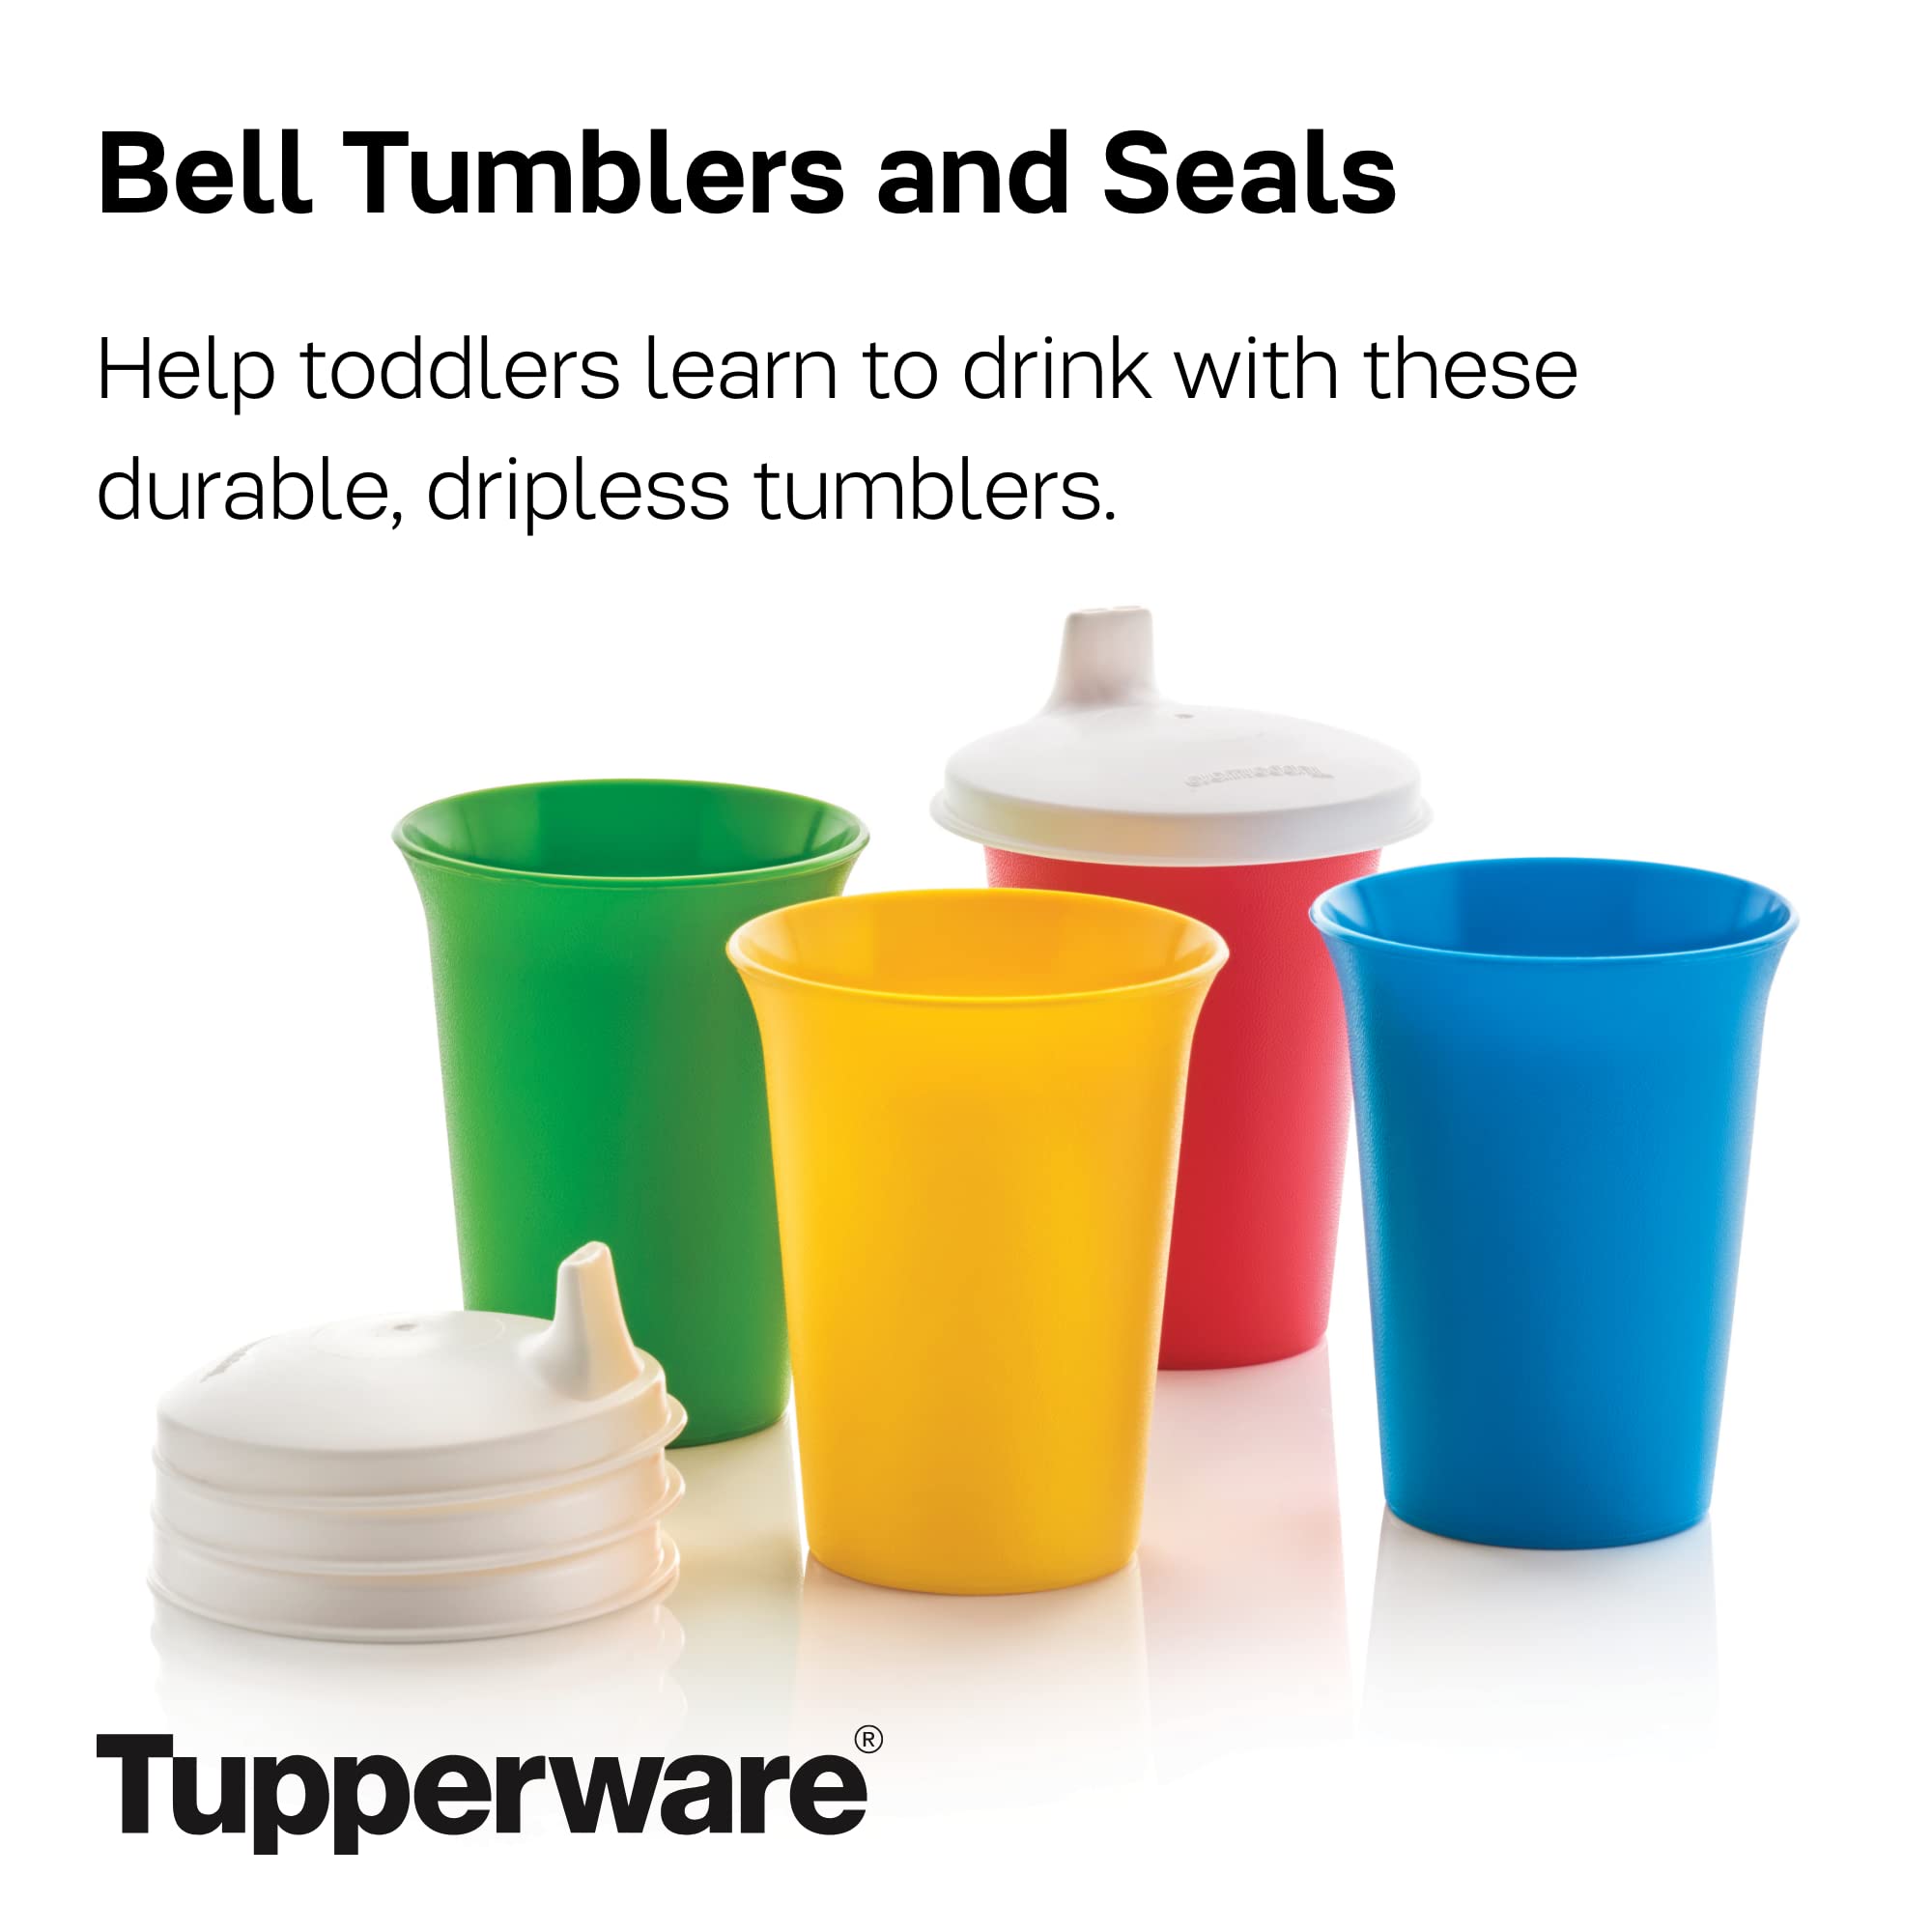 tupperware bell tumblers